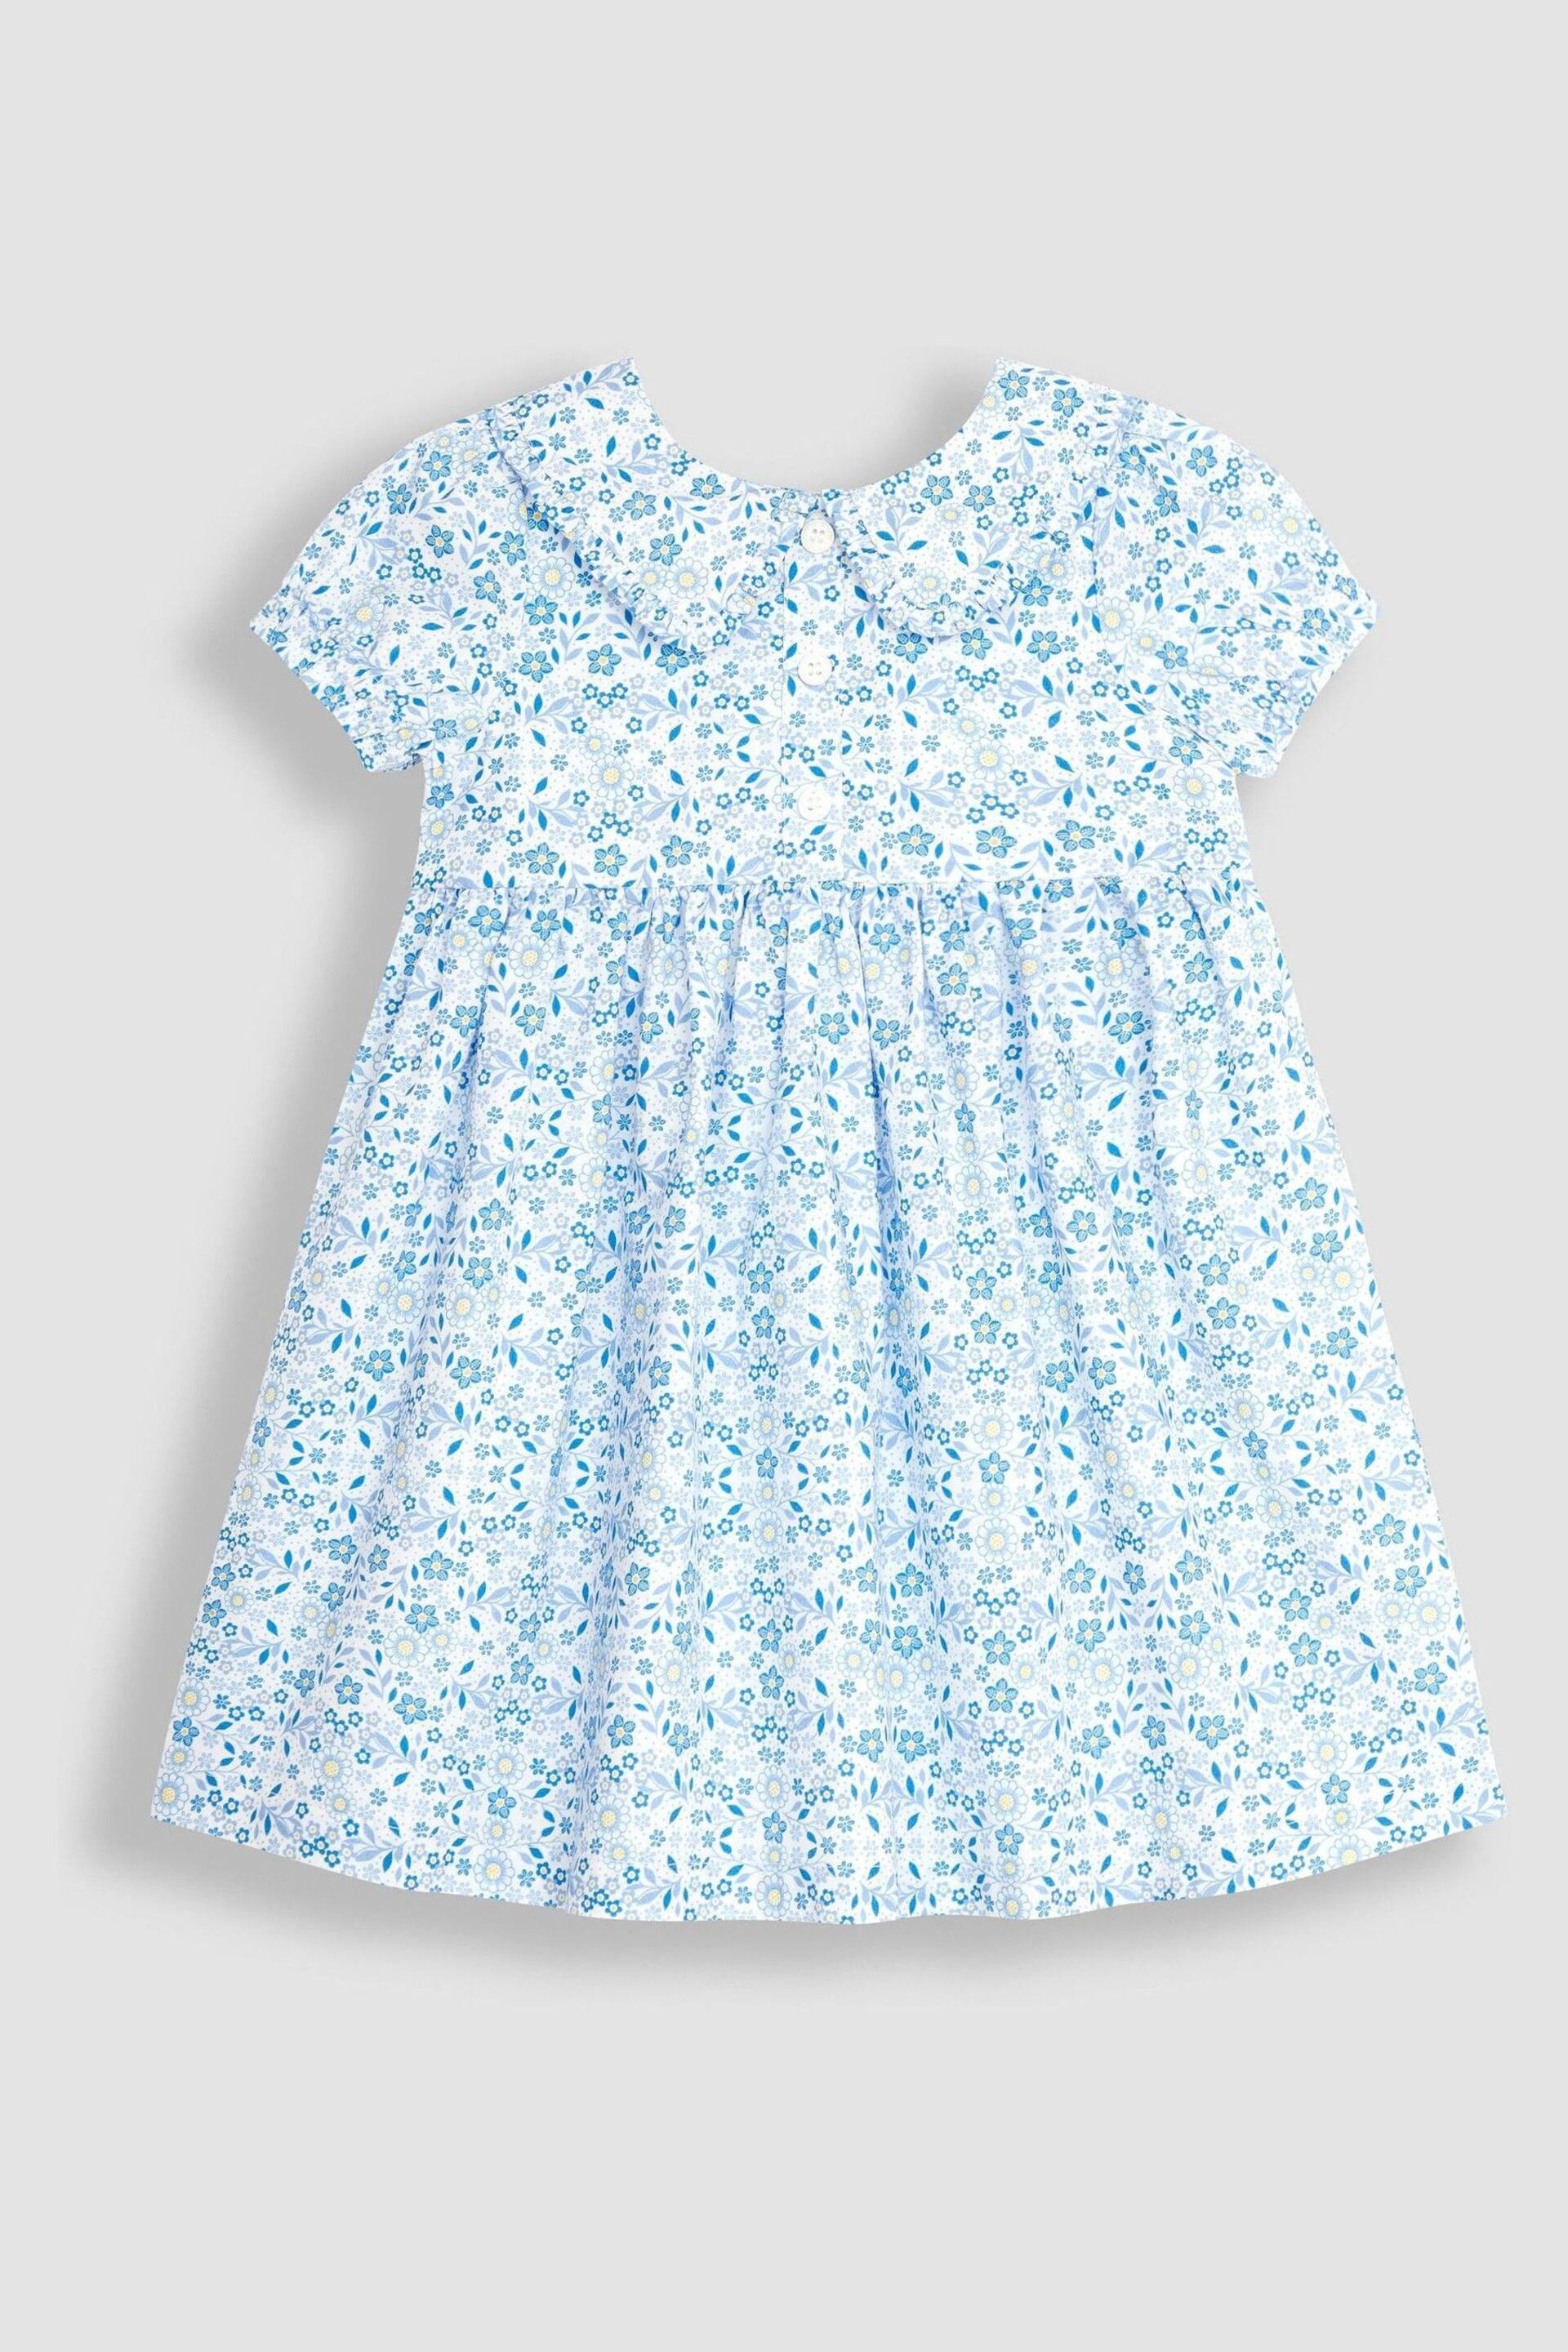 JoJo Maman Bébé Blue Floral Button Front Collar Tea Dress - Image 1 of 3